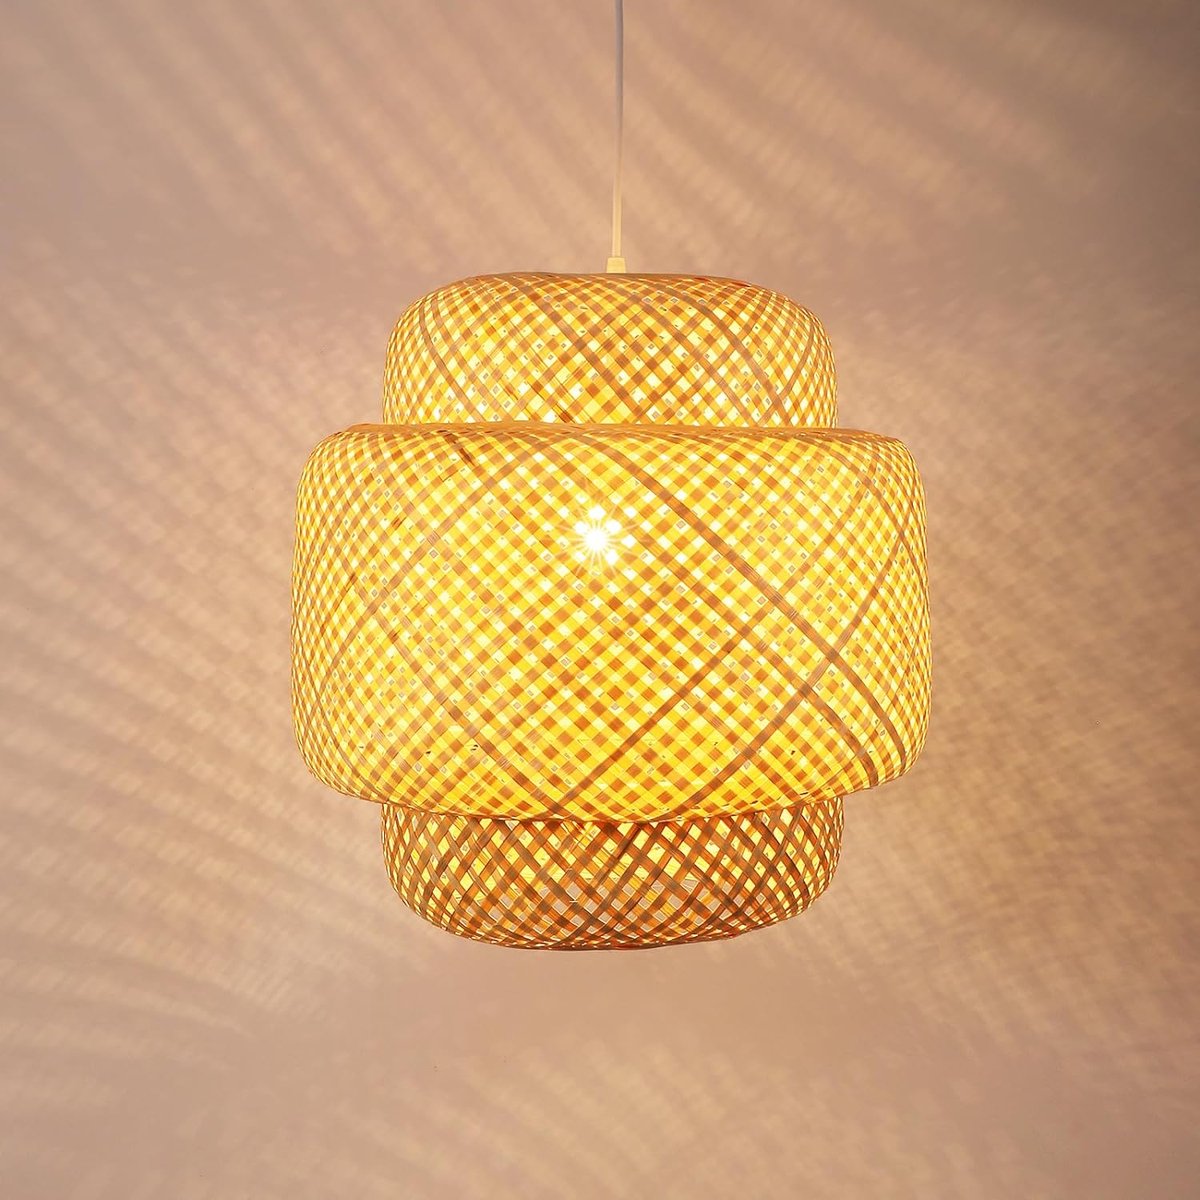 Delaveek-Bamboe handgeweven Hanglamp-E27 -In hoogte verstelbaar-Dia 40cm (lamp niet inbegrepen)